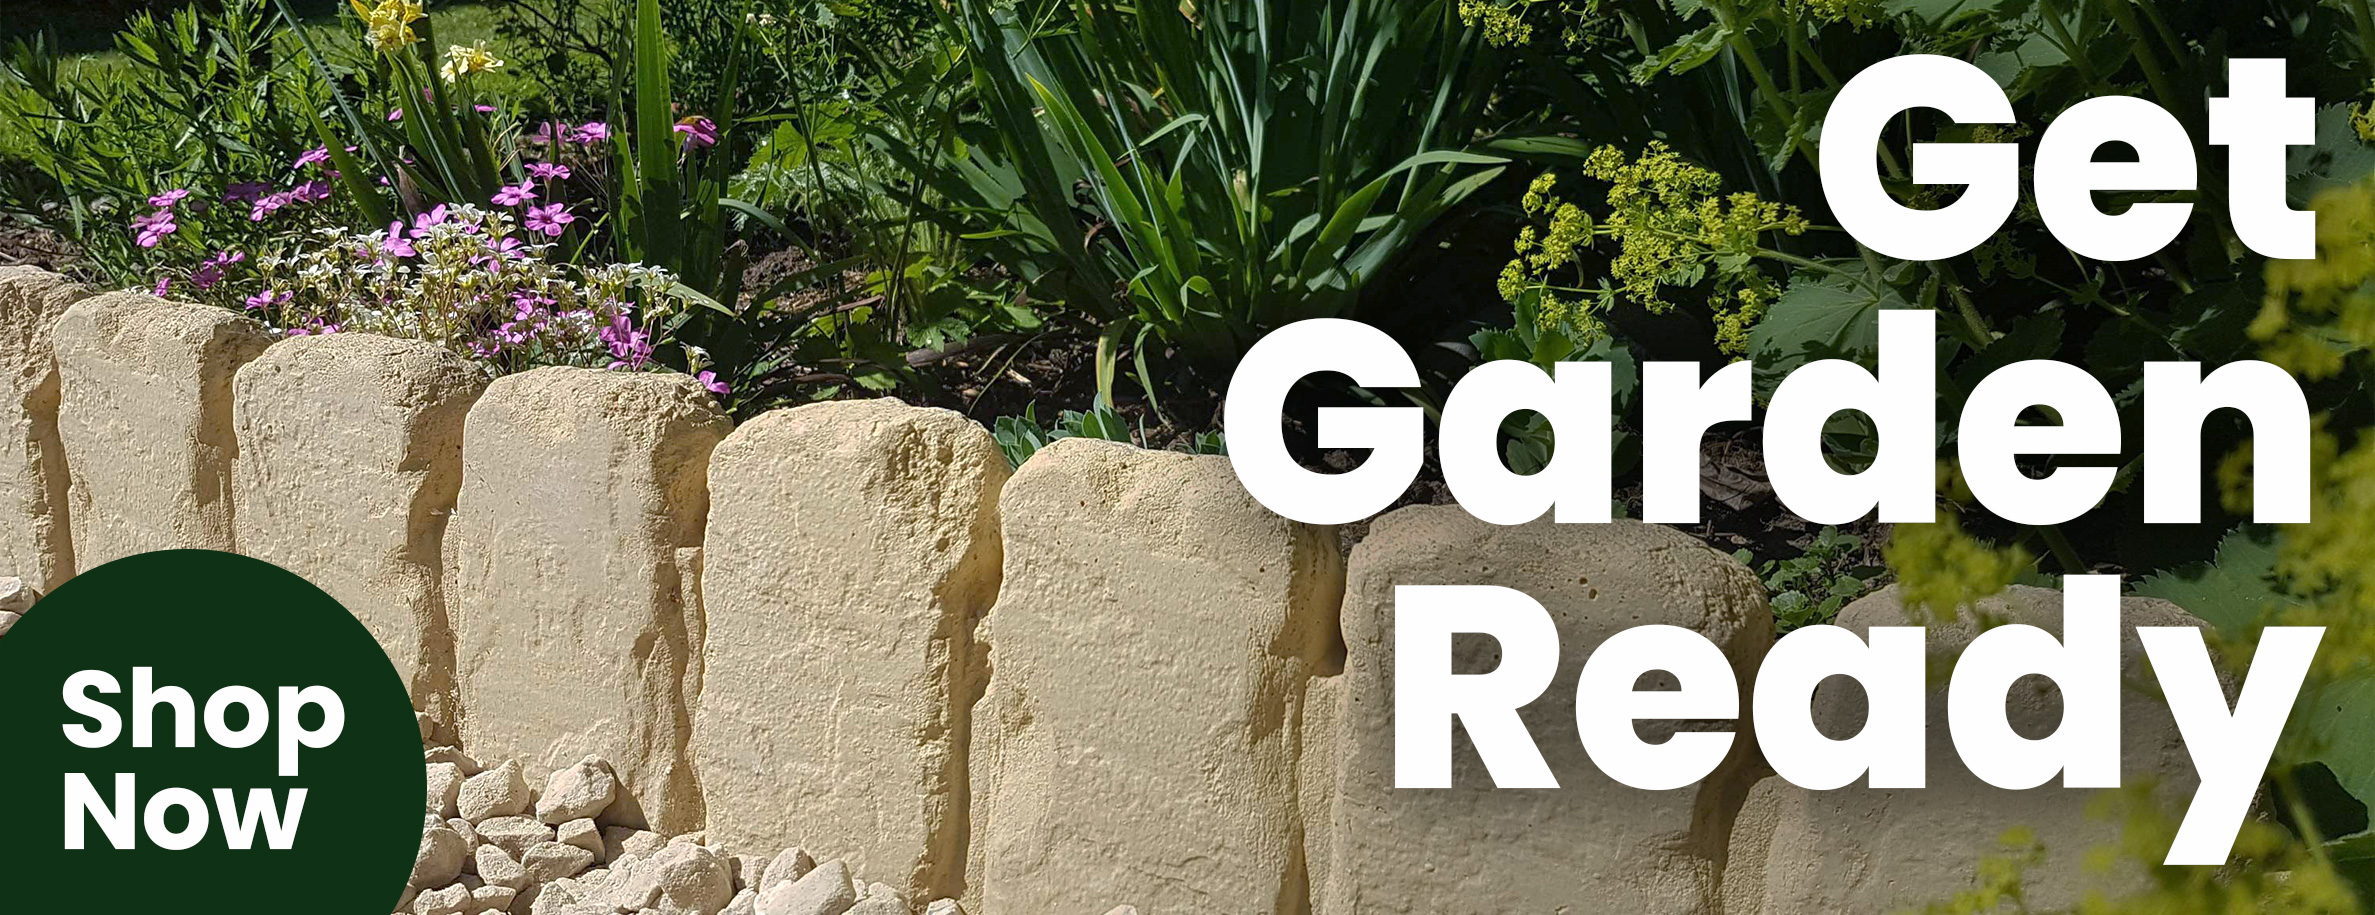 Get Garden Ready with GardenStone